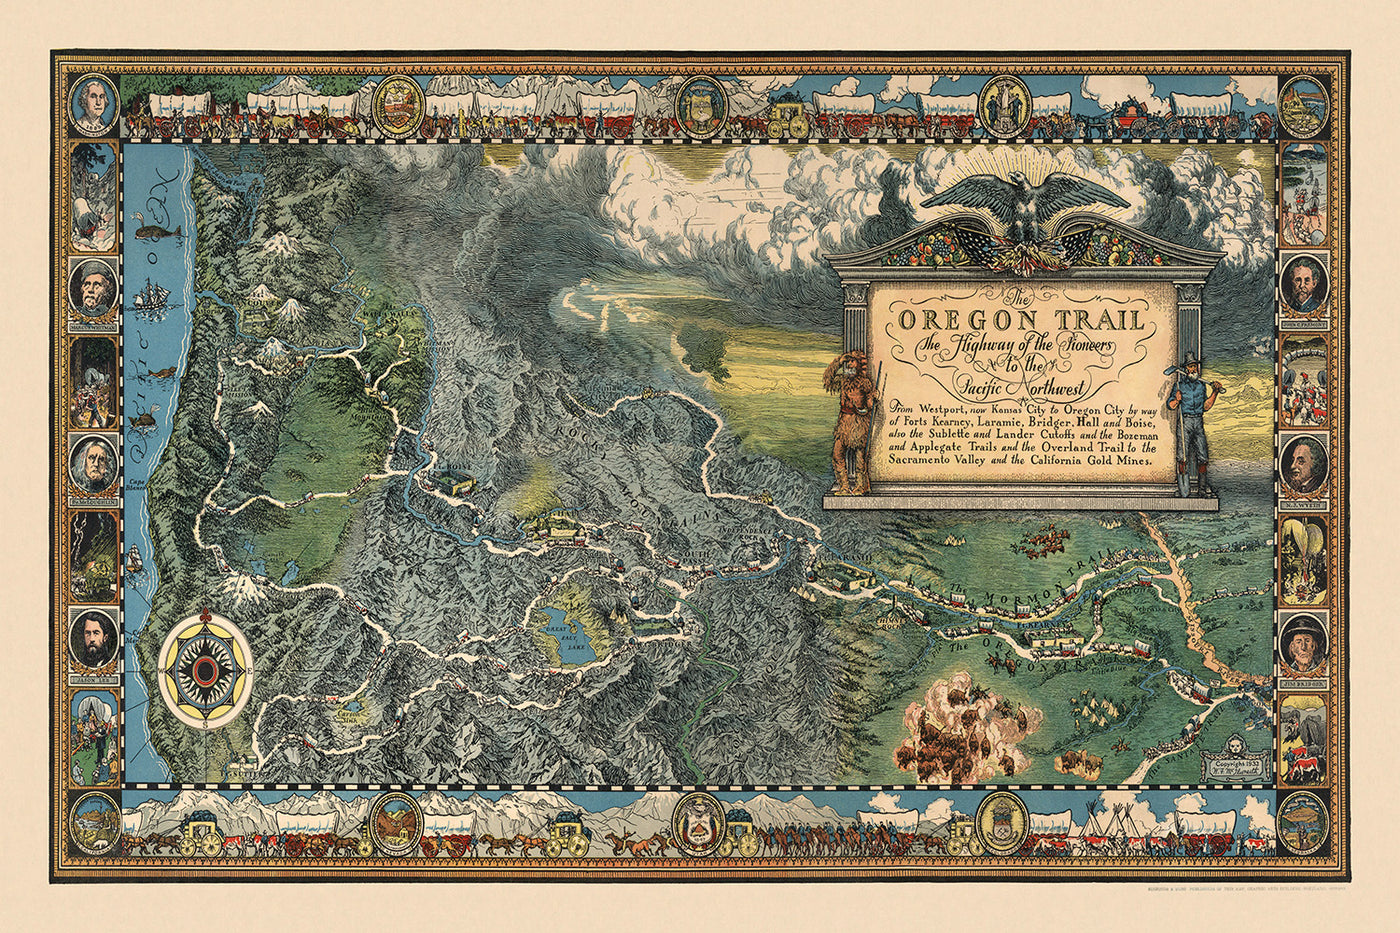 Ancienne carte de l'Oregon Trail par William Forsyth McIlwraith, 1932 : Mormon Trail, Westport, Whitman Mission, Fort. Vancouver